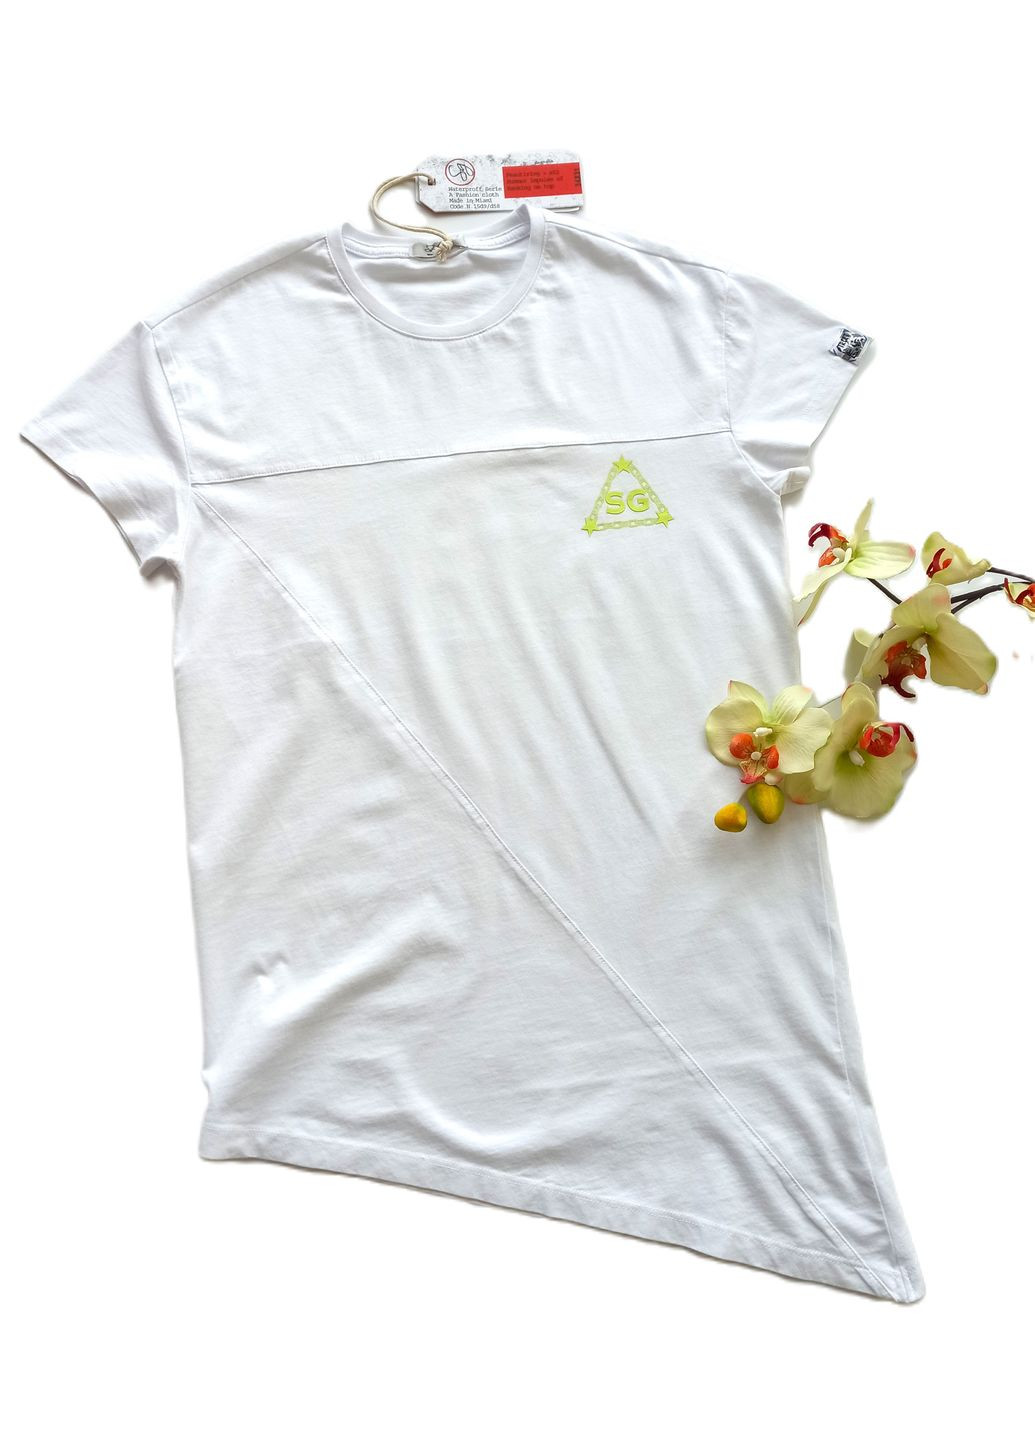 Белая демисезонная футболка удлиненная для парня sg5661 белый асимметричный низ (146 см) Street Gang